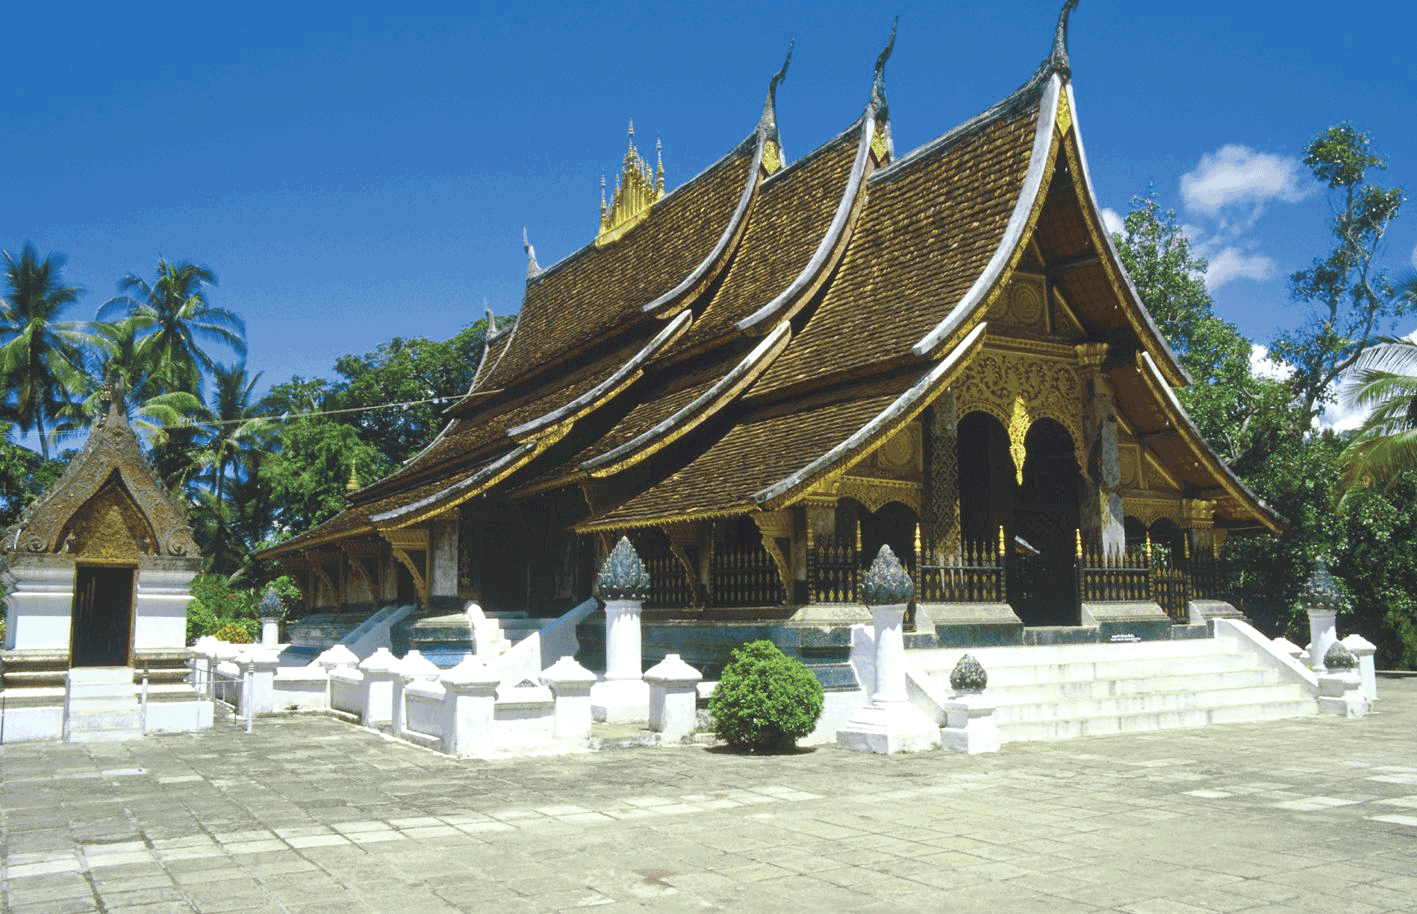 Et smukt tempel i Laos - Kulturrejser